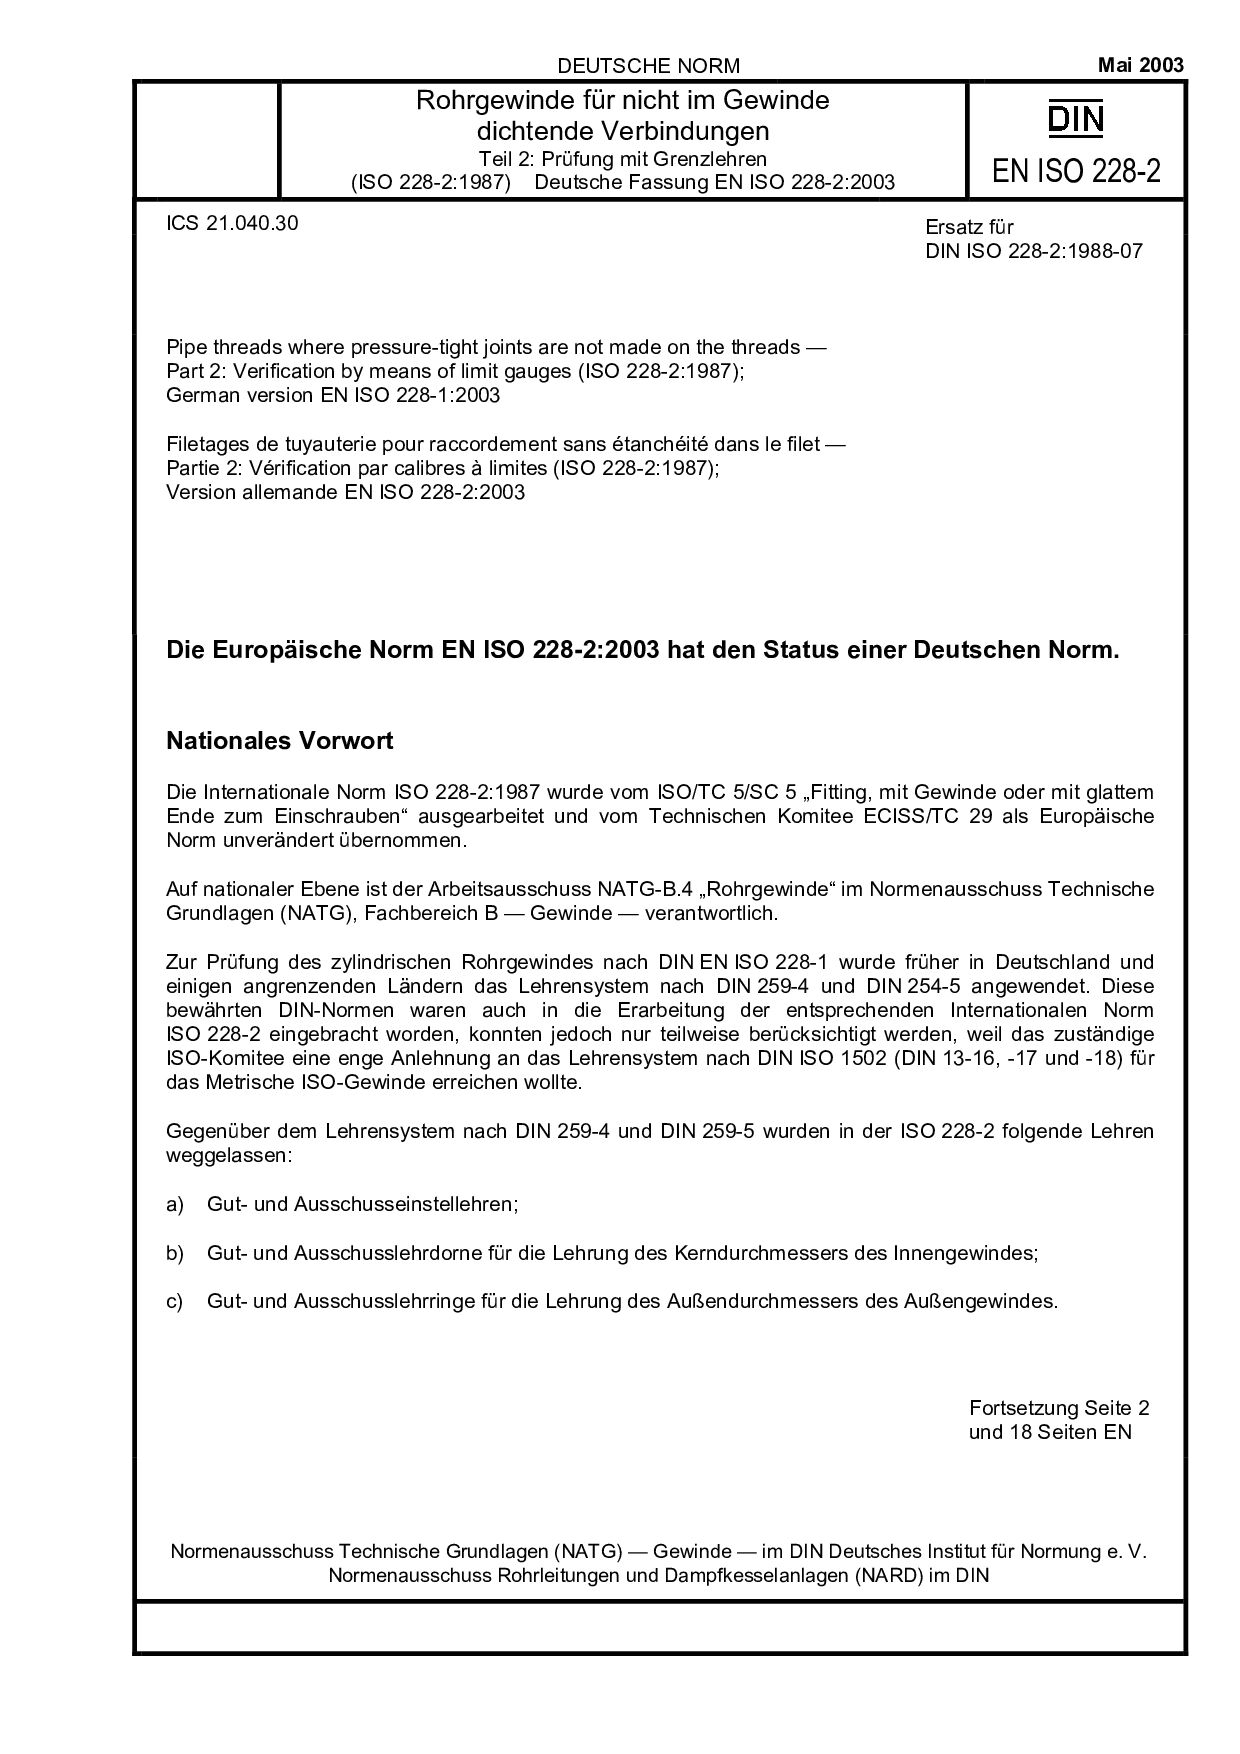 DIN EN ISO 228-2:2003